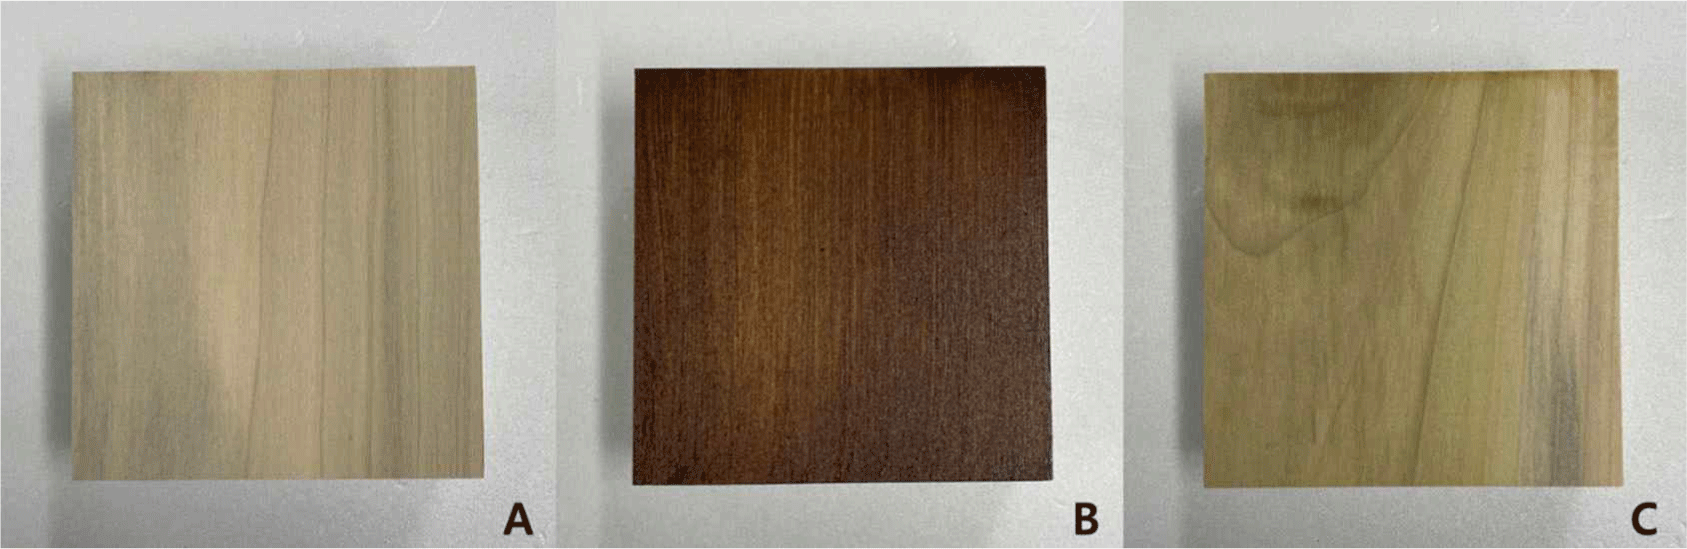 wood-51-5-410-g2